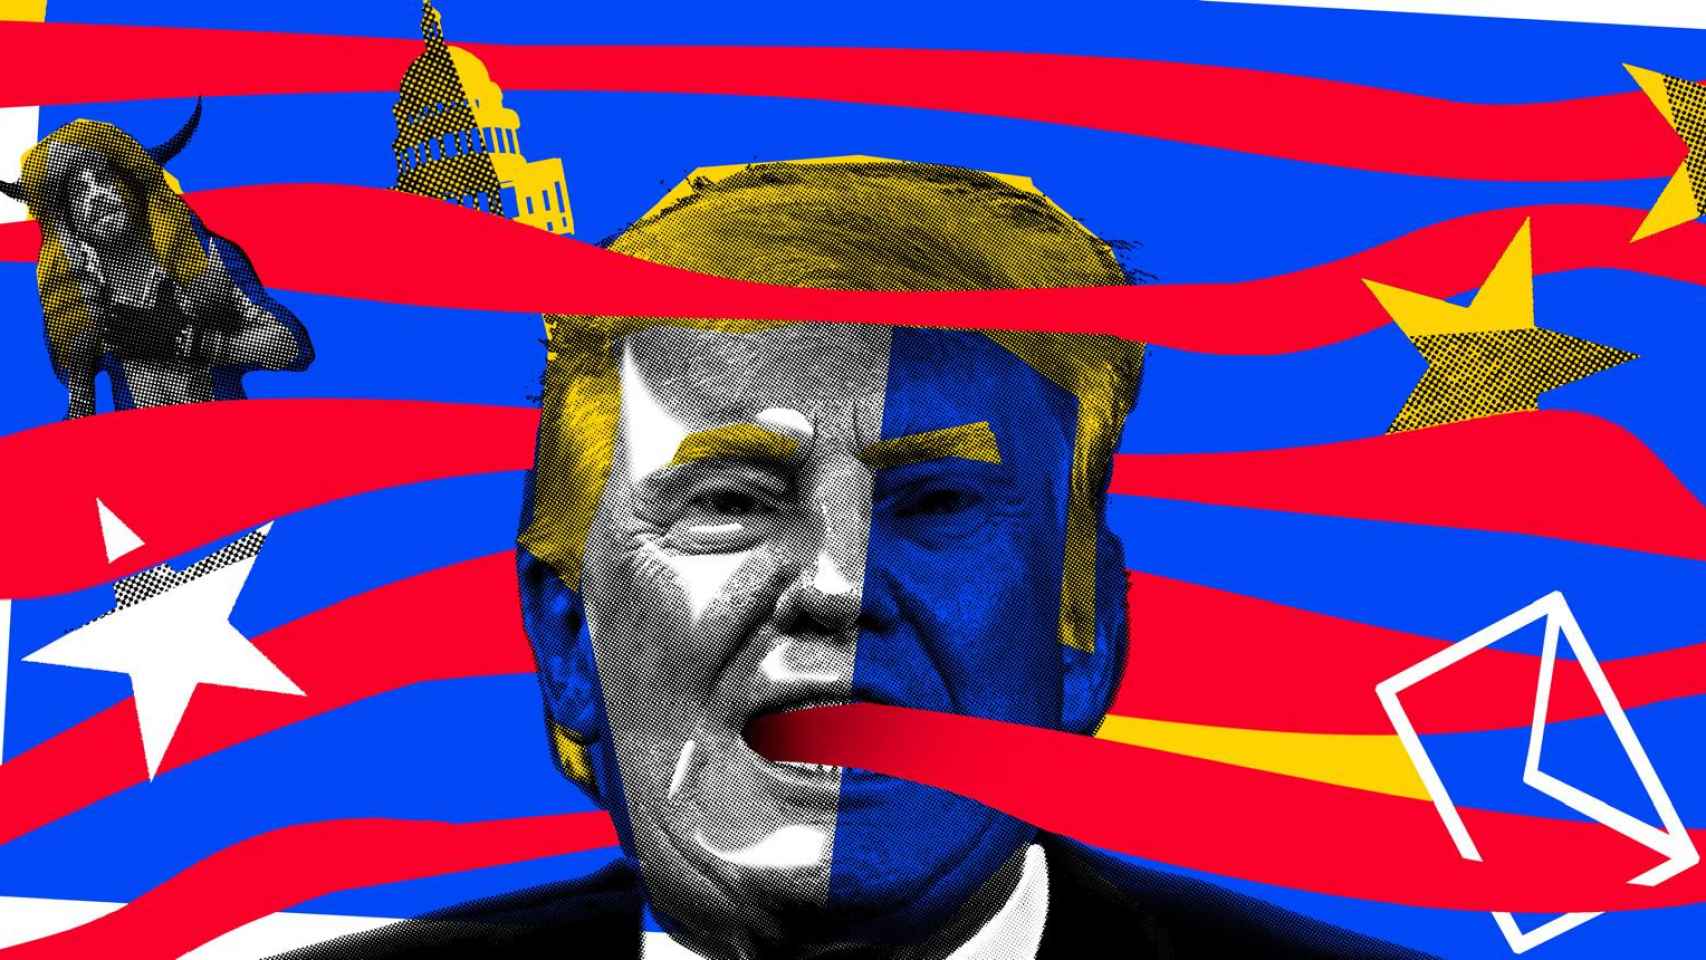 Imagen de Trump con la bandera americana y la española de fondo